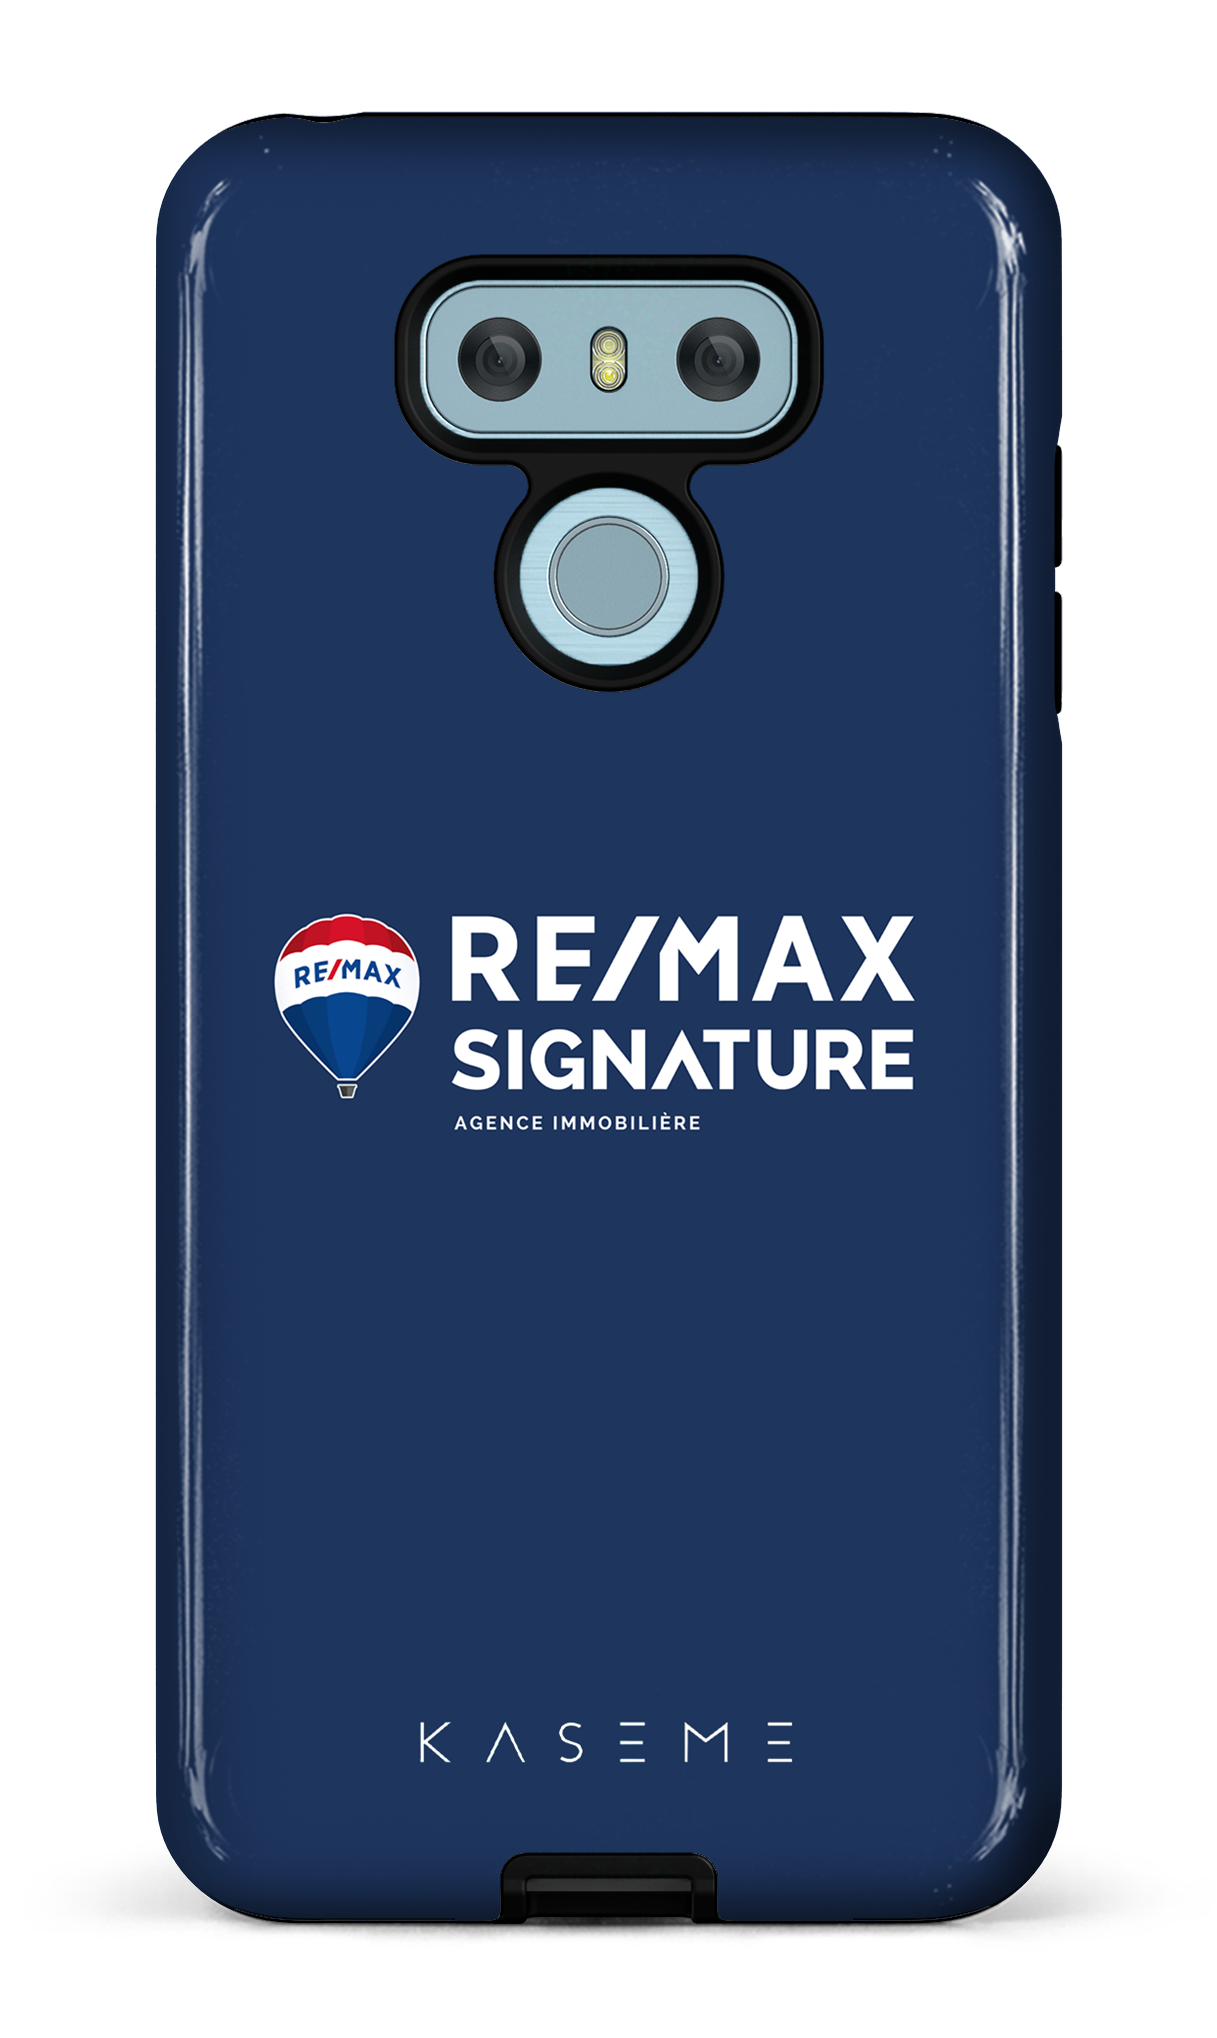 Remax Signature Bleu - LG G6